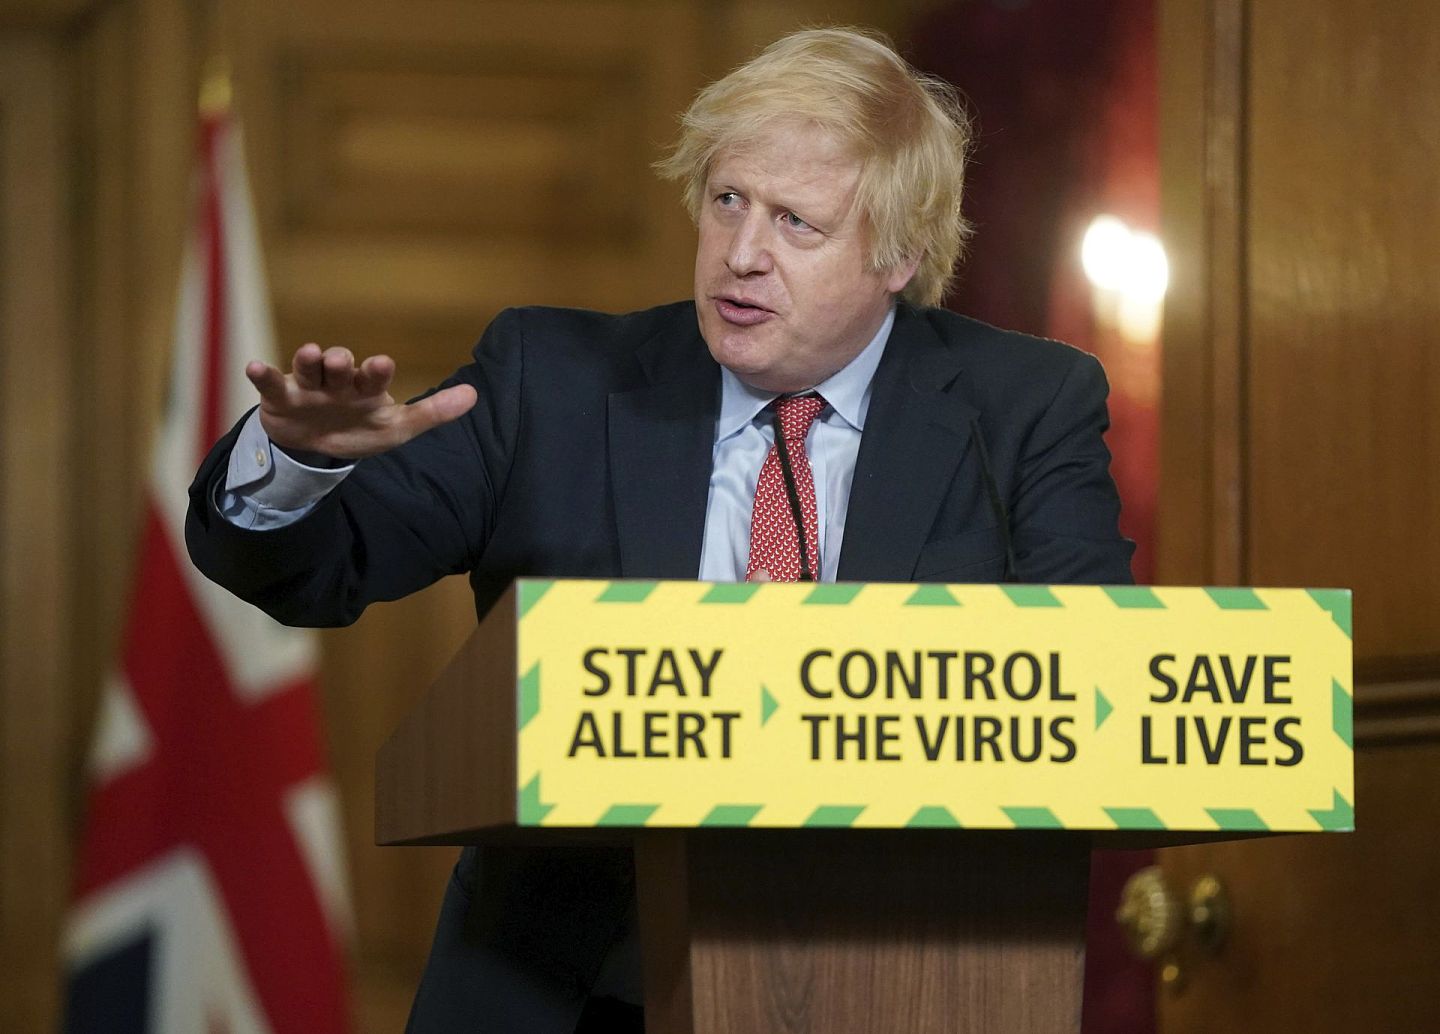 英国首相约翰逊（Boris Johnson）感染新冠病毒后已经痊愈，英国政府也已经重启经济，英国能否完全控制疫情还待时间检验。（AP)